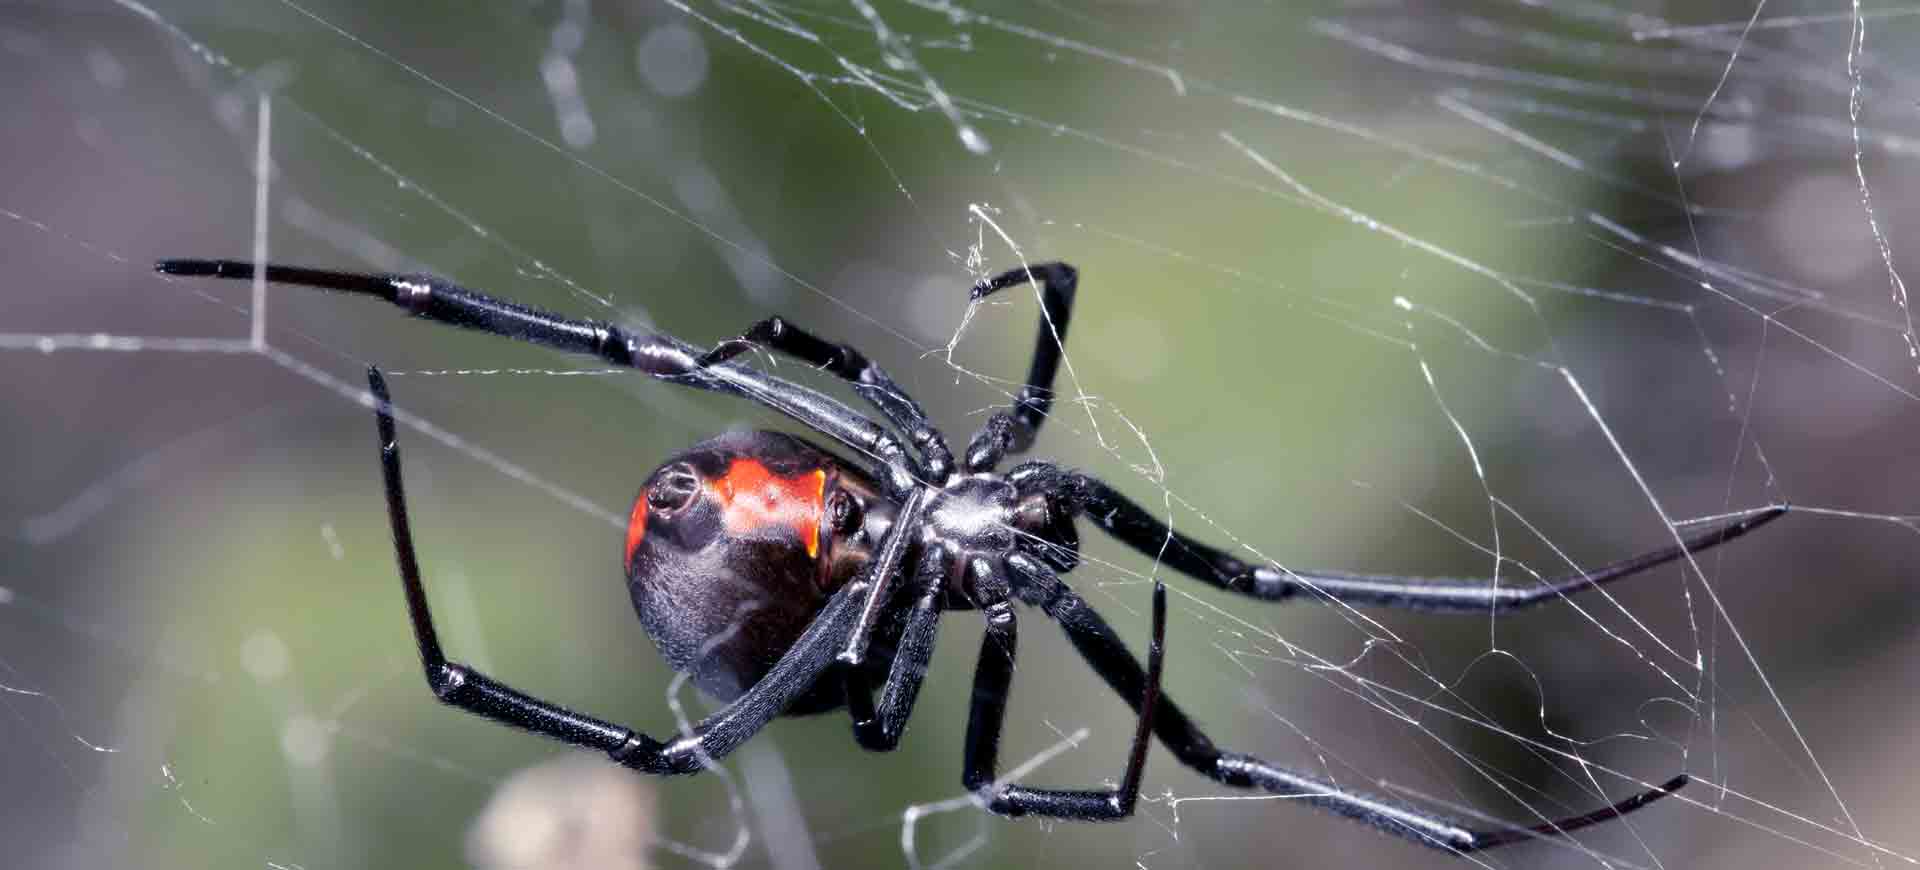 spider pest control eastlake